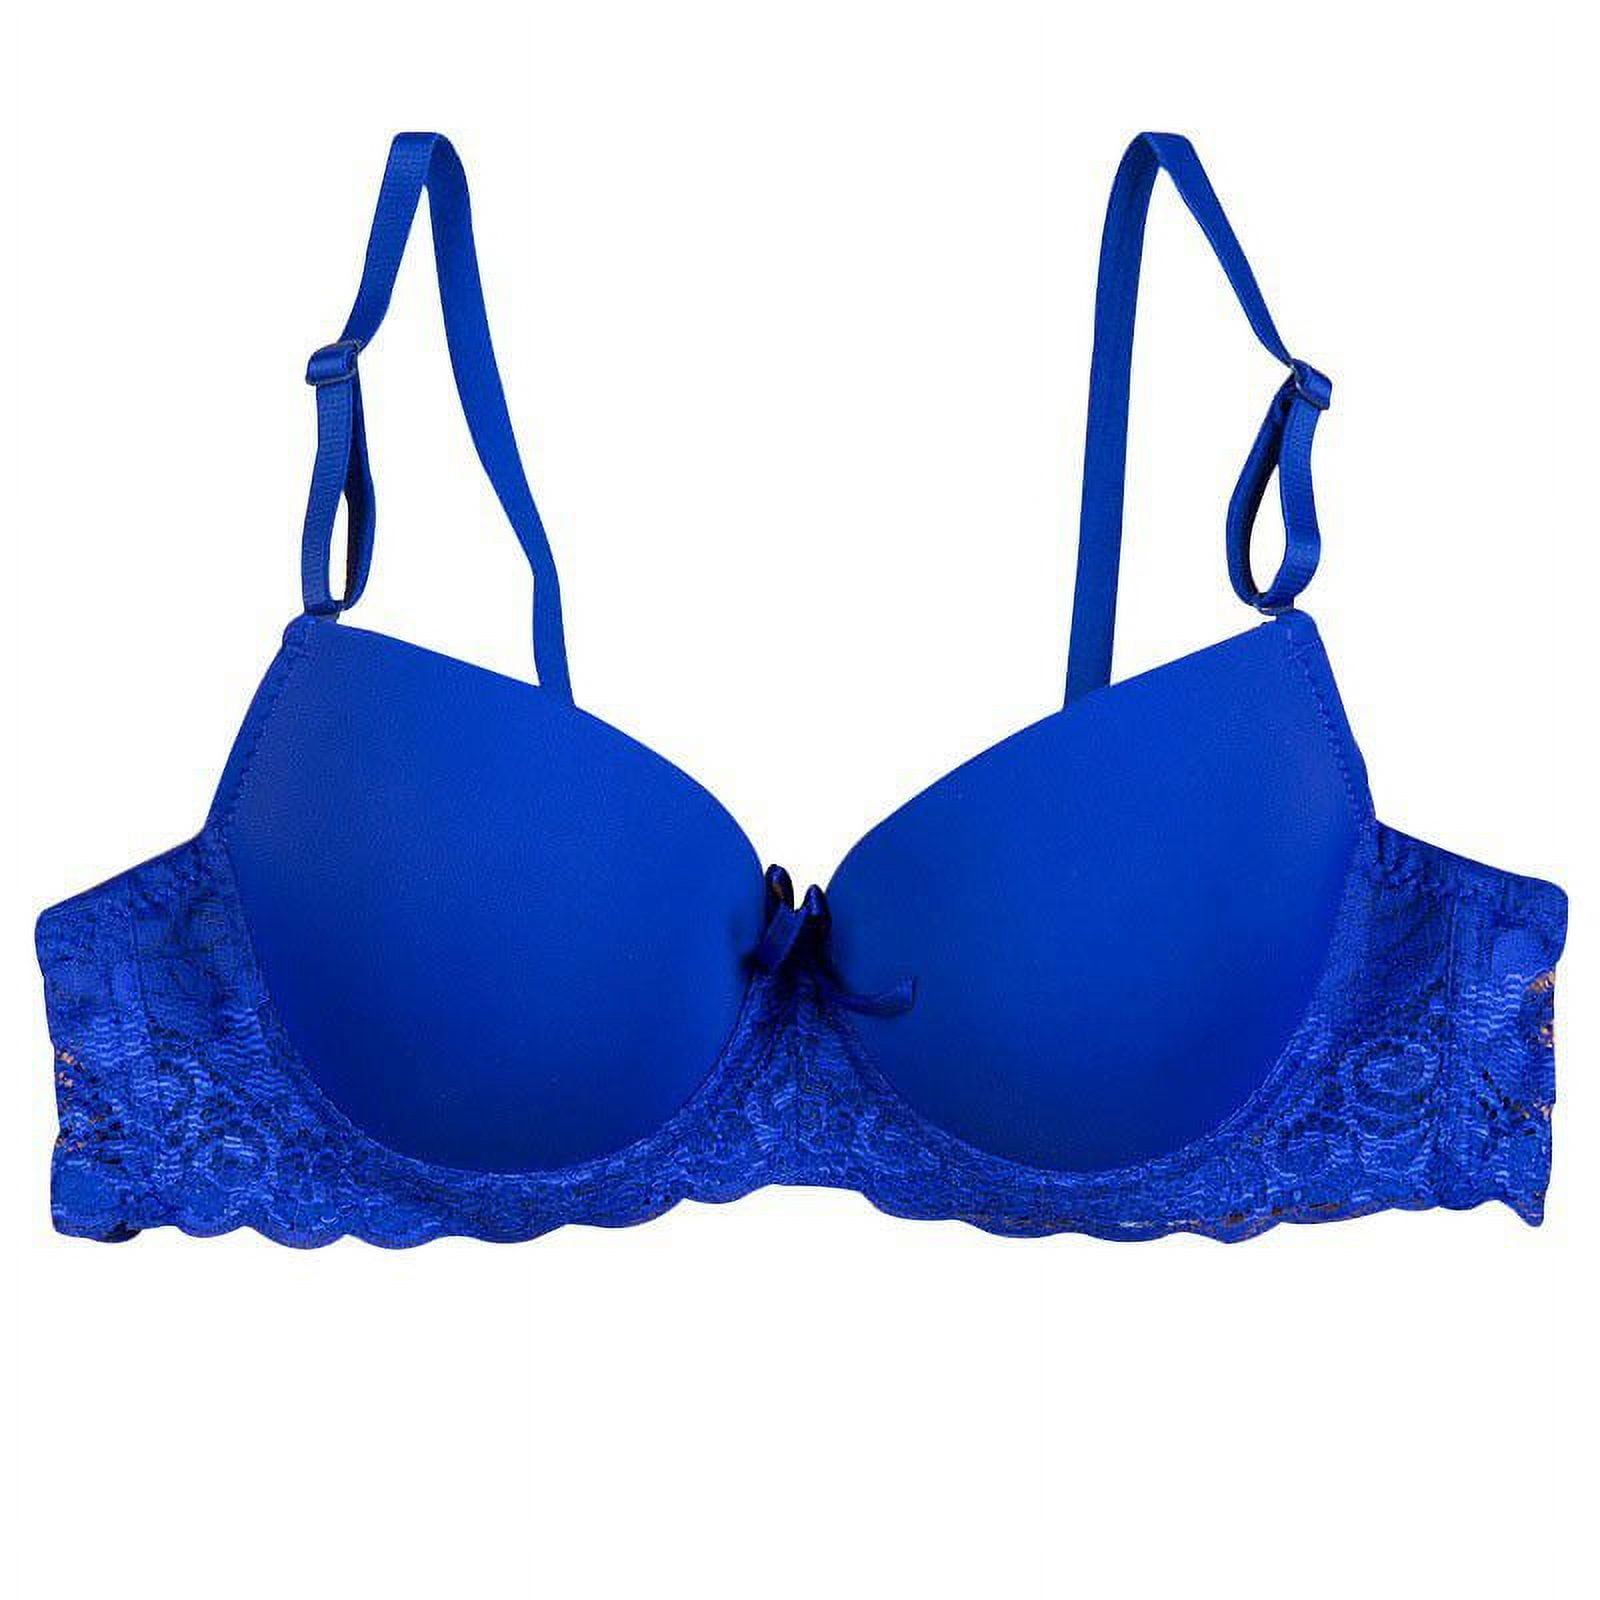 Women's Lace Plunge Push-up Bra - Auden™ Blue 40g : Target